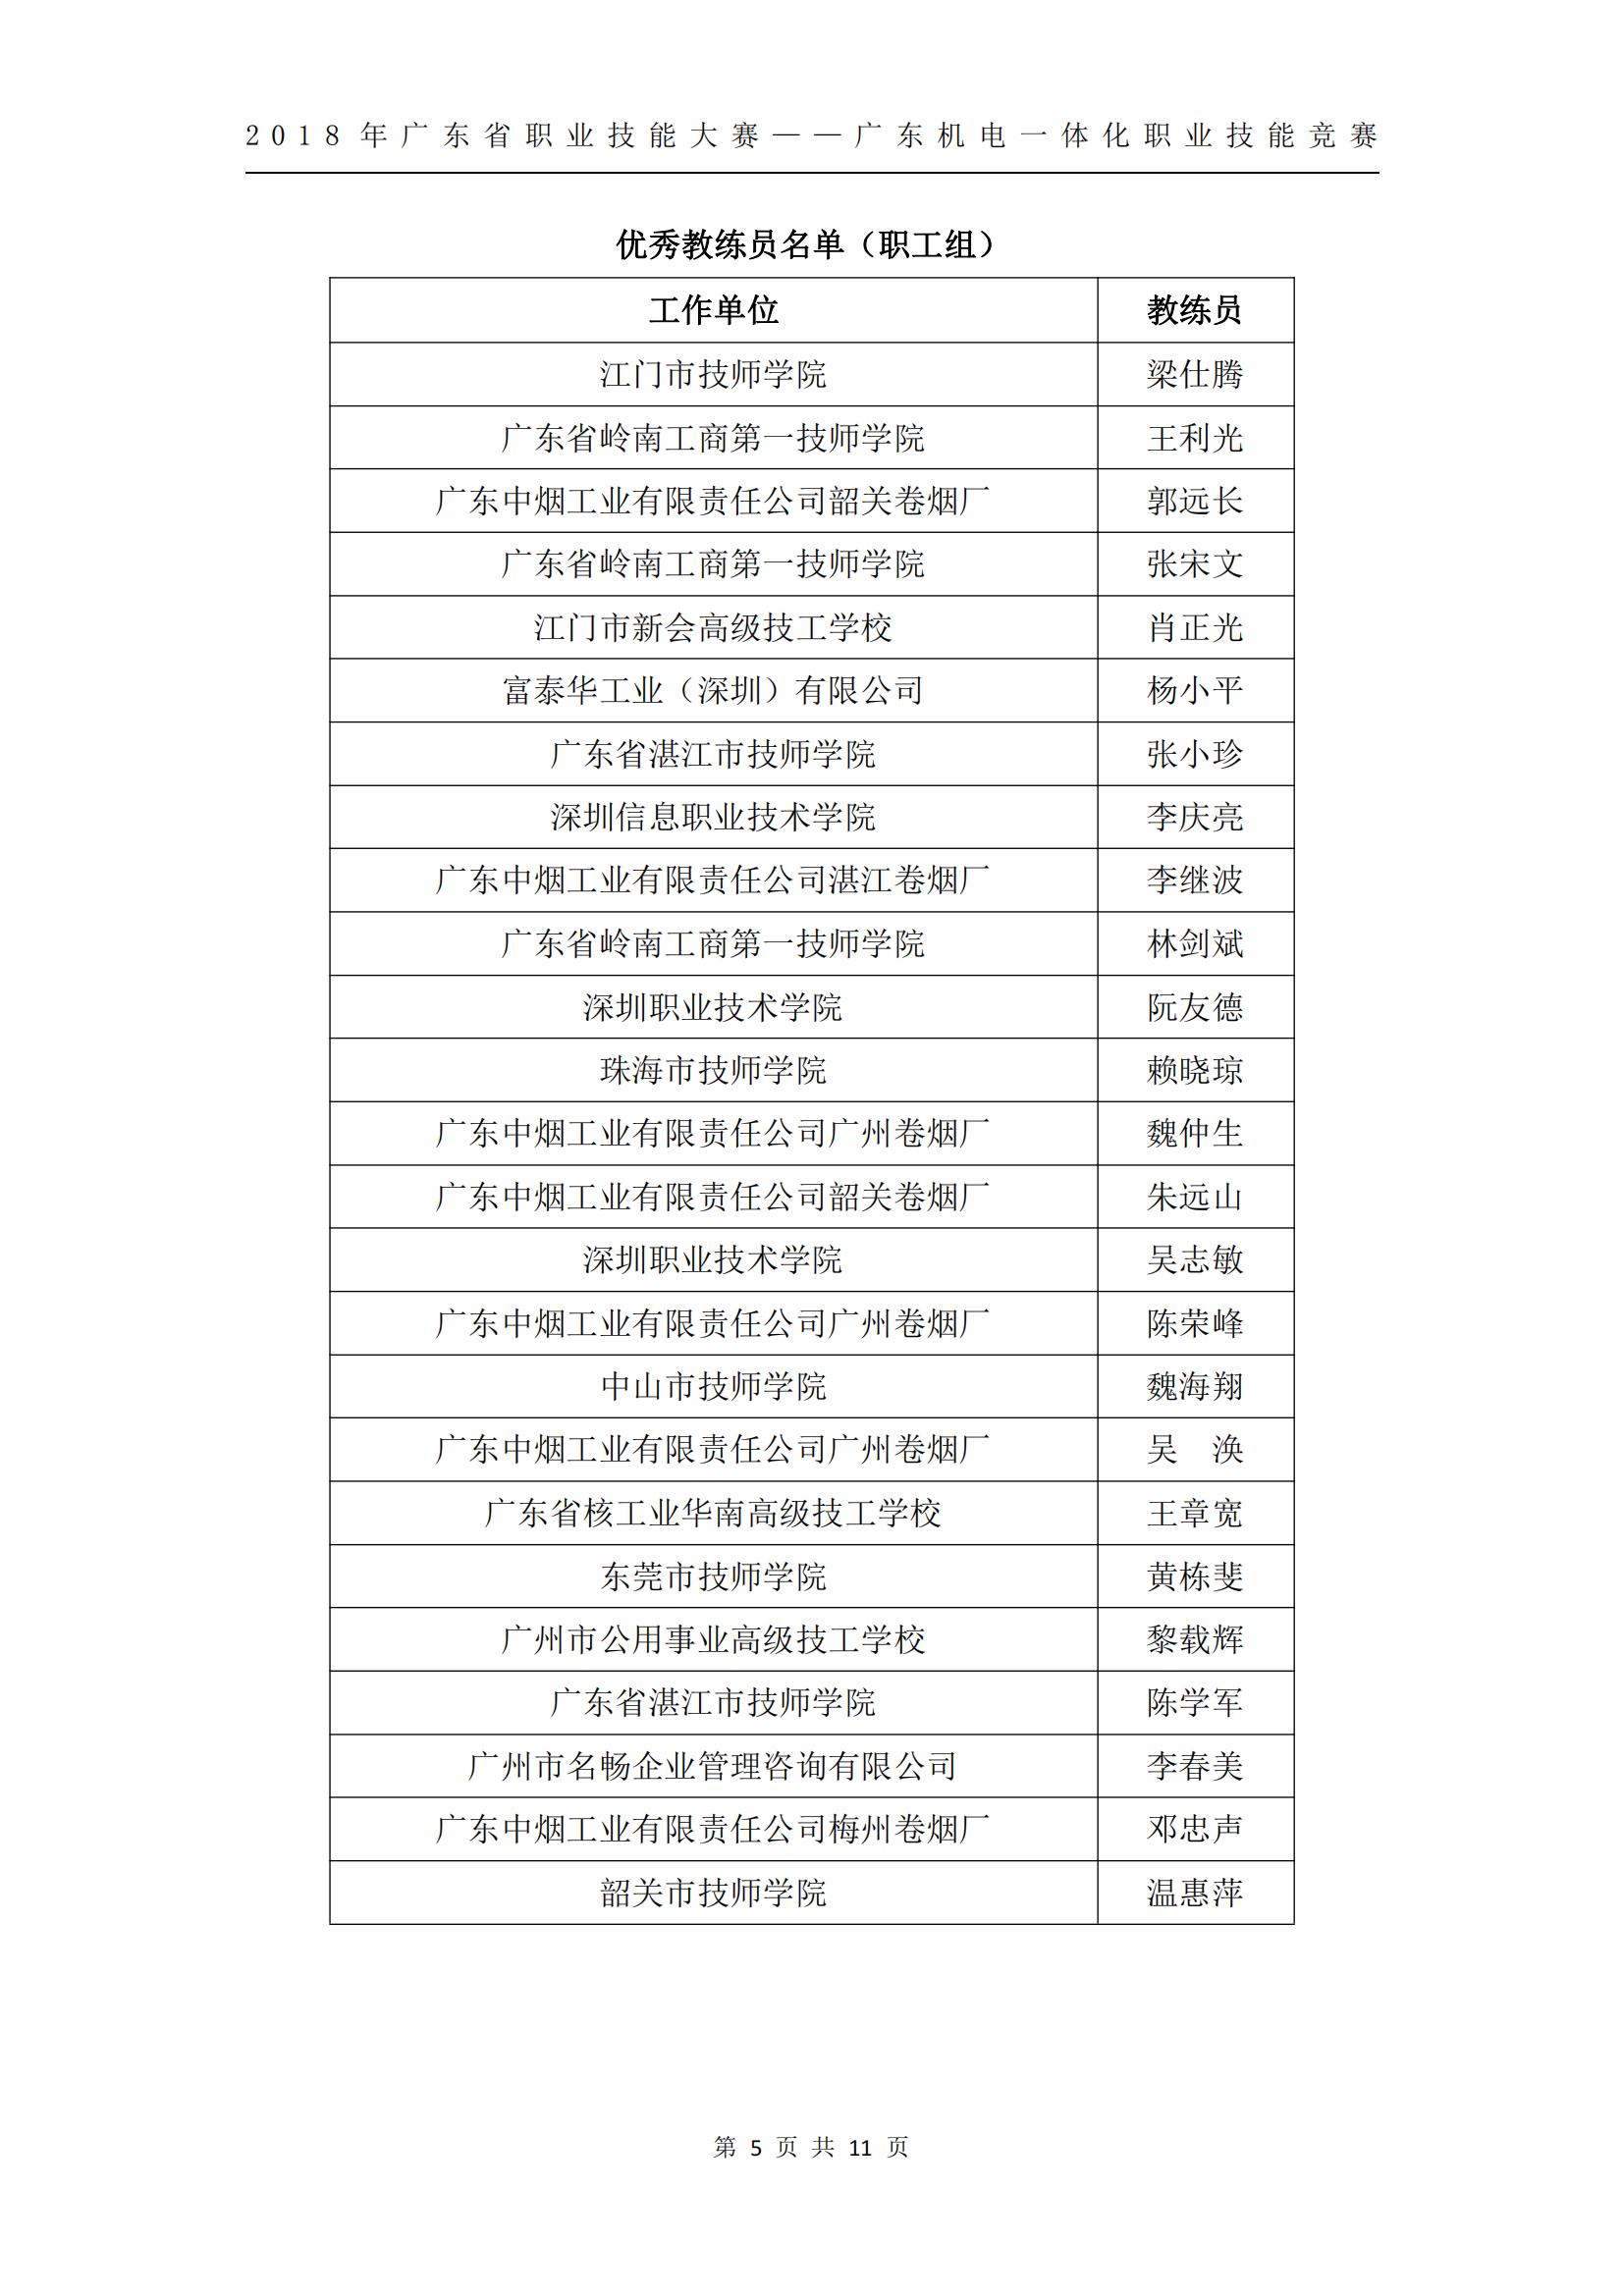 2018 年广东省职业技能大赛——广东机电一体化职业技能竞赛获奖人员和单位公布_04.jpg